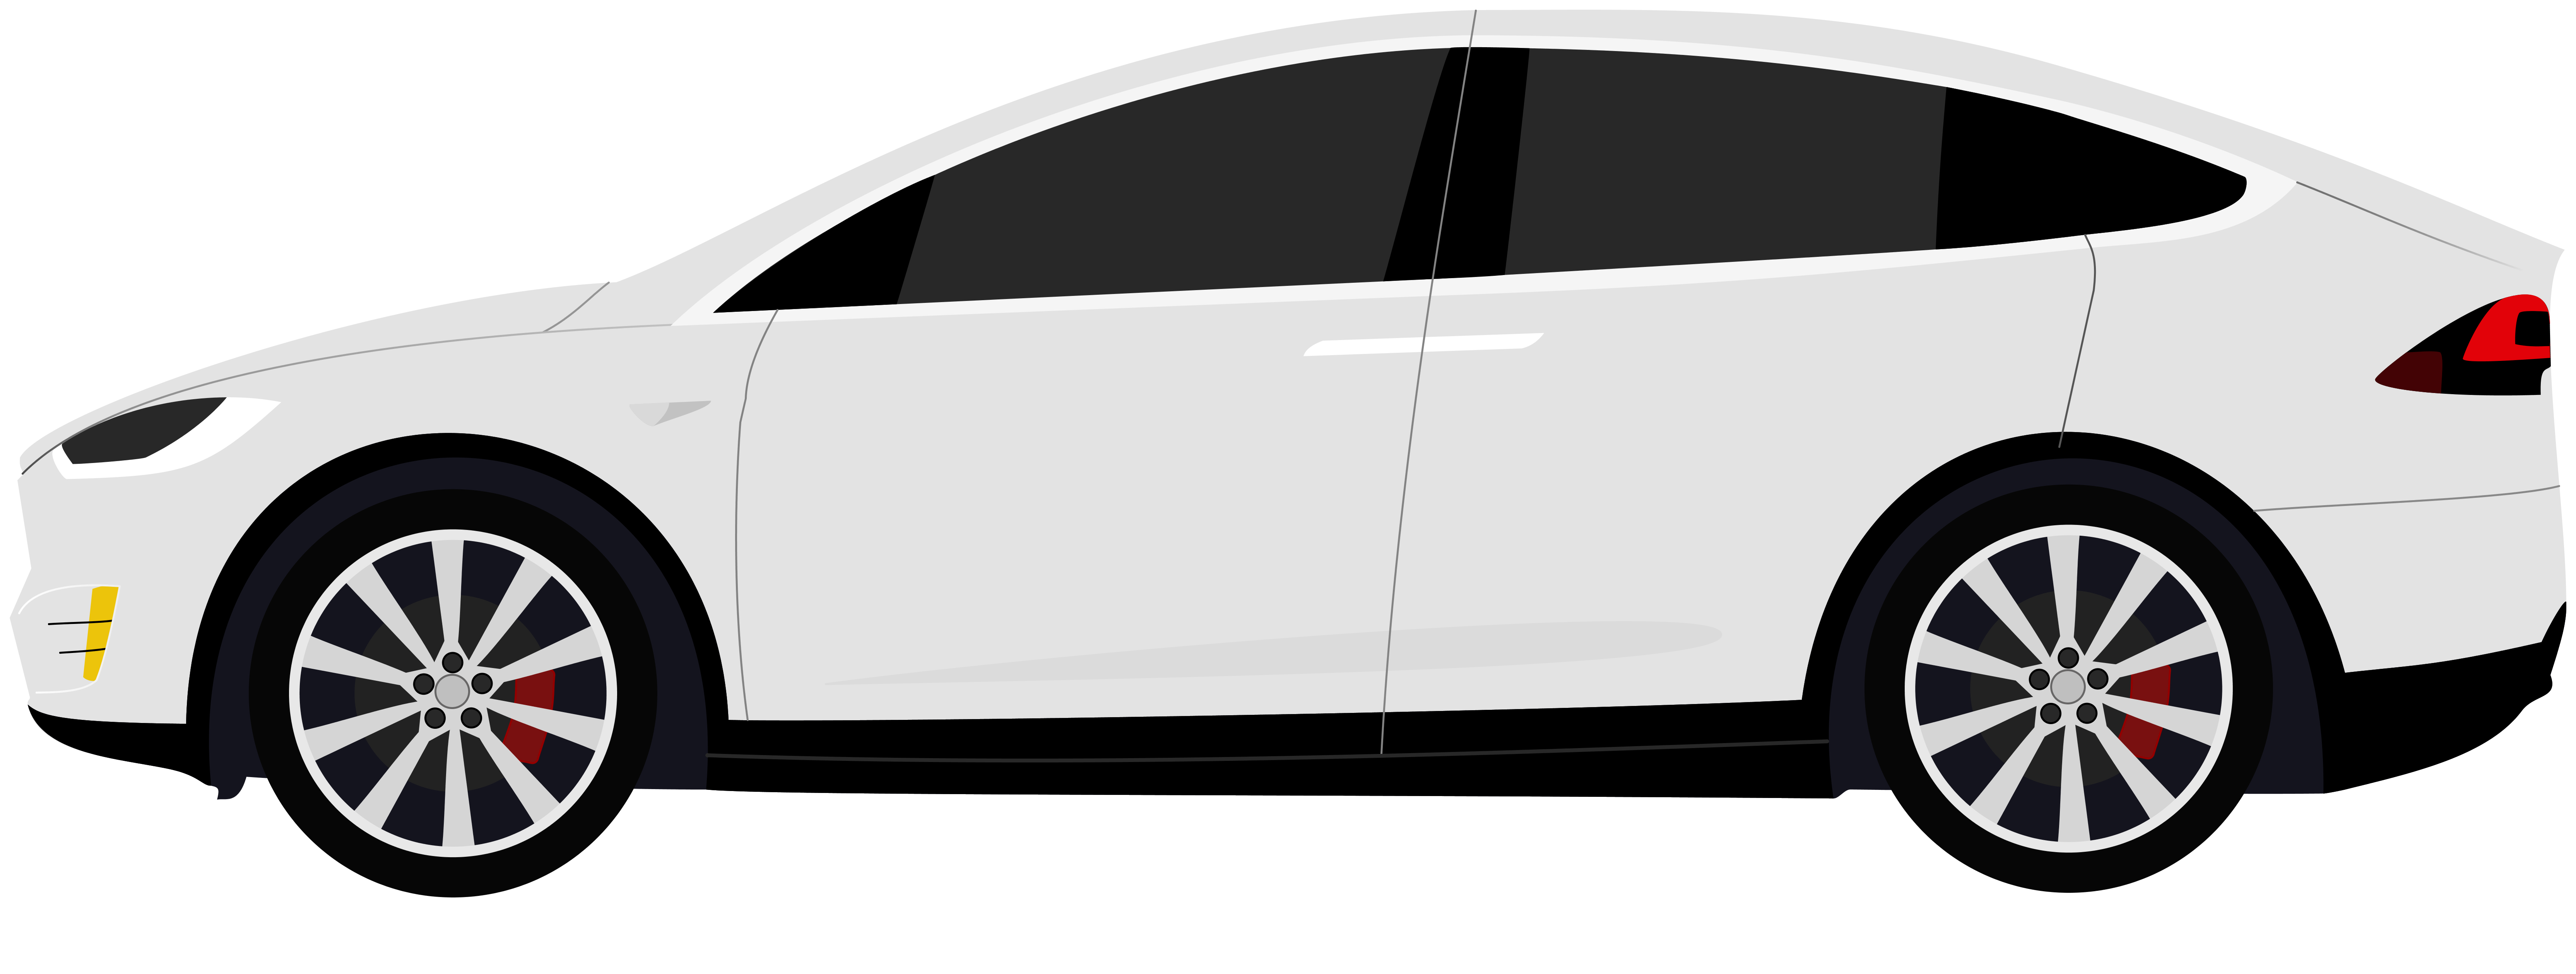 ภาพ PNG รถยนต์เทสลาสีขาว